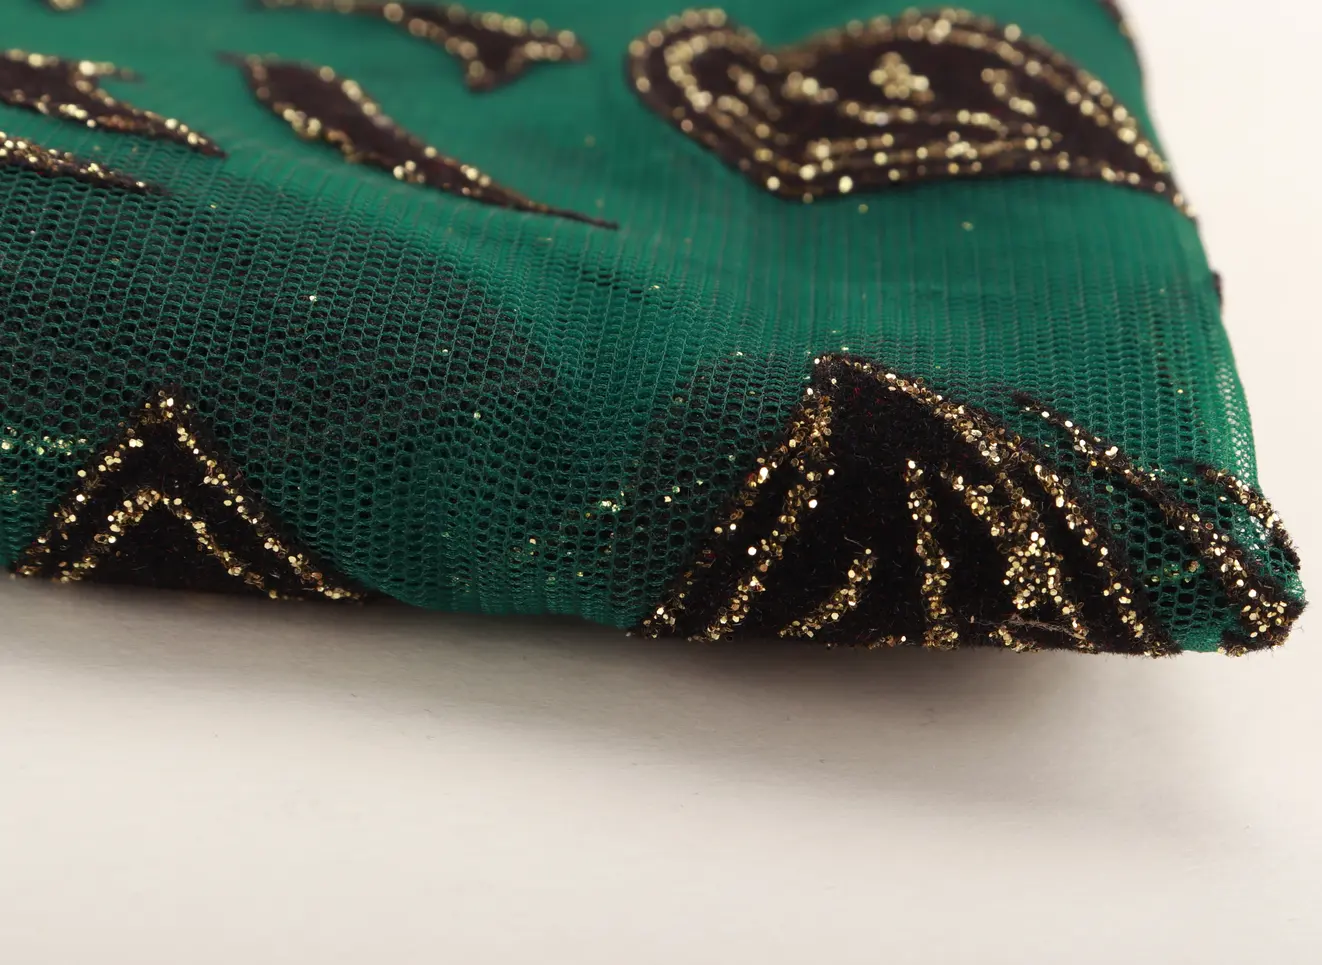 El último diseño de gold-rimmed negro hoja parche verde impreso de tela 100% de poliéster Banquete de boda Vestido de tela